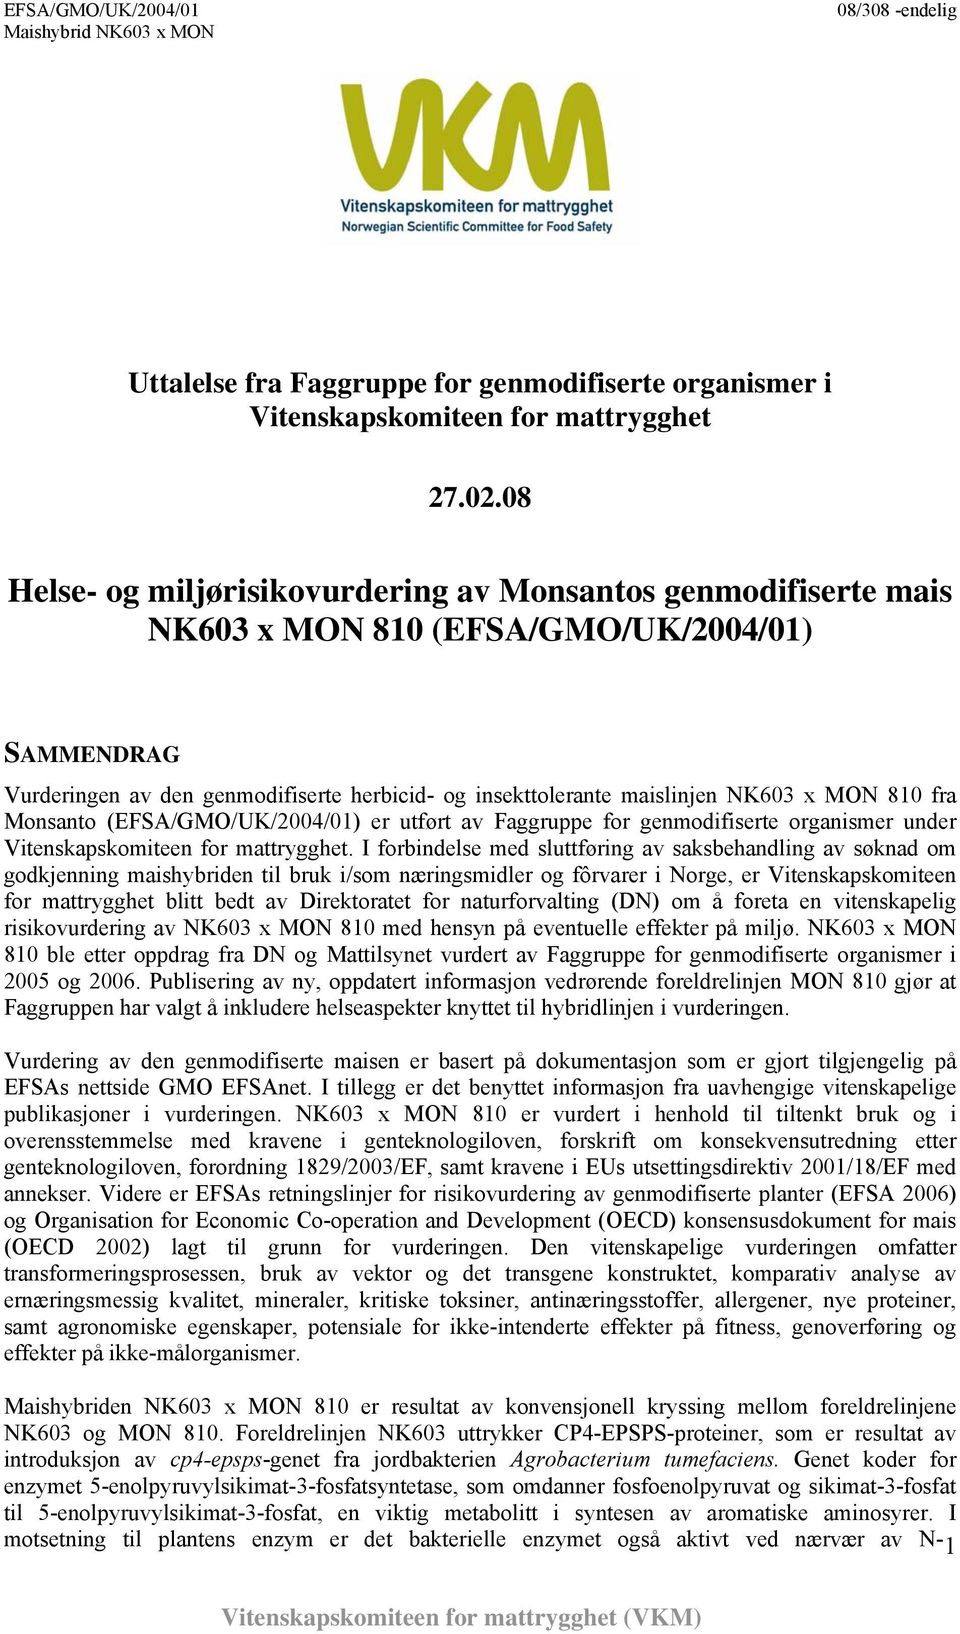 MON 810 fra Monsanto (EFSA/GMO/UK/2004/01) er utført av Faggruppe for genmodifiserte organismer under Vitenskapskomiteen for mattrygghet.